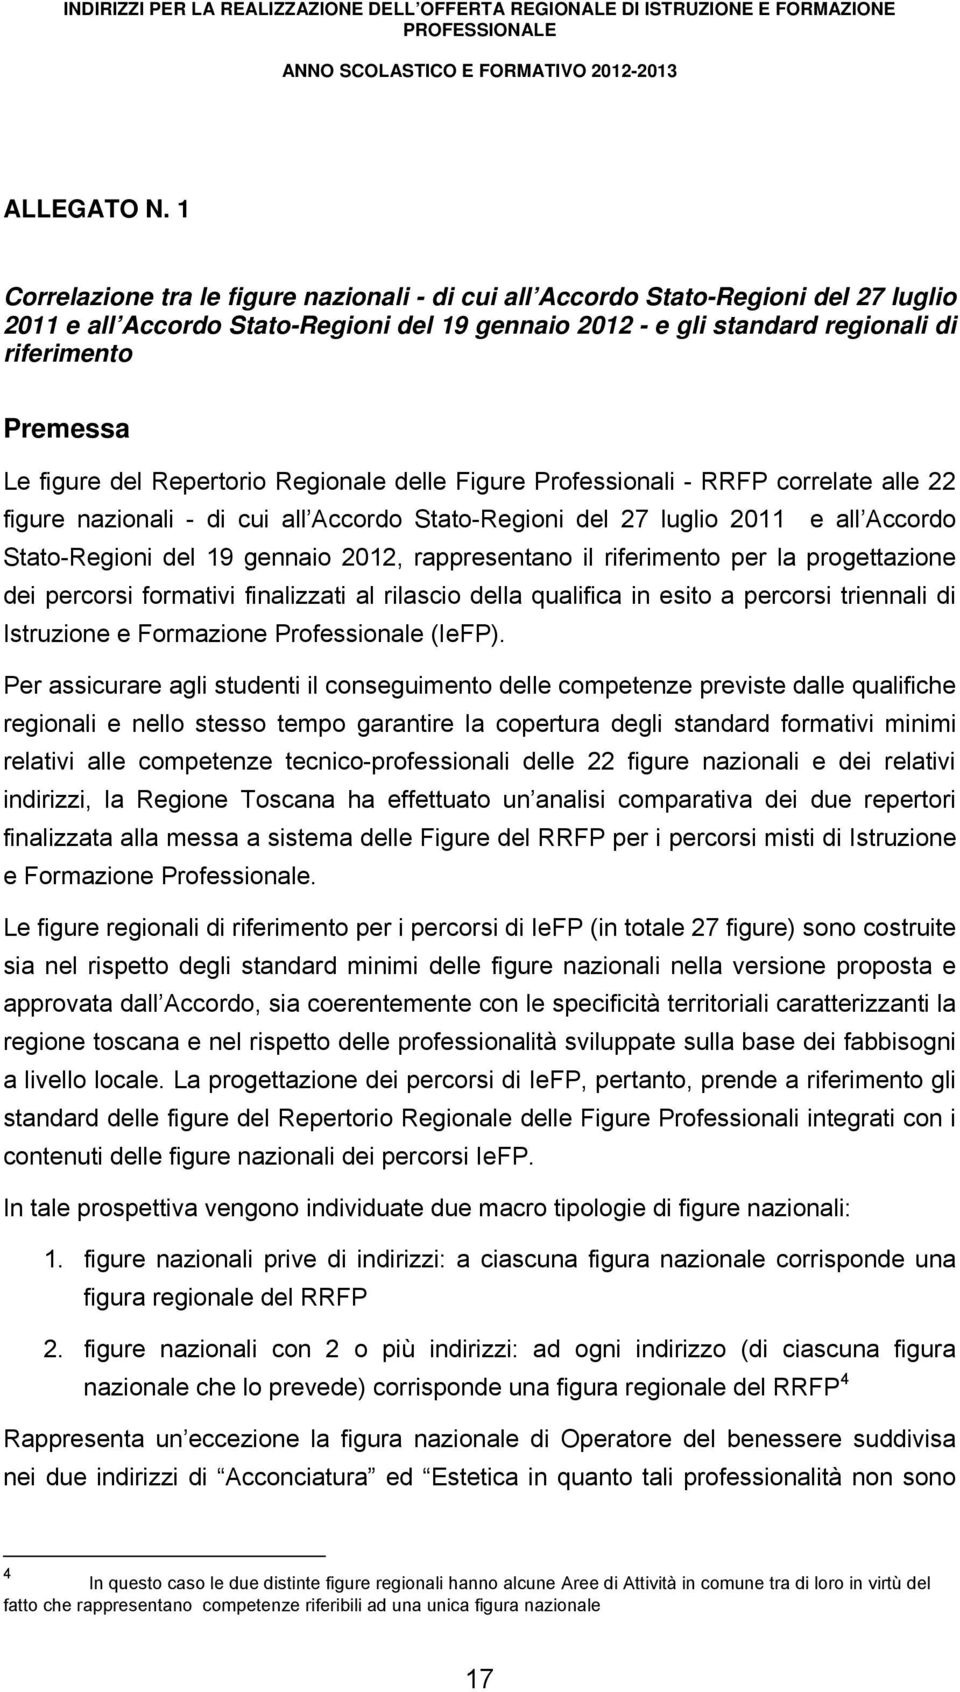 figure del Repertorio Regionale delle Figure Professionali - RRFP correlate alle 22 figure nazionali - di cui all Accordo Stato-Regioni del 27 luglio 2011 e all Accordo Stato-Regioni del 19 gennaio